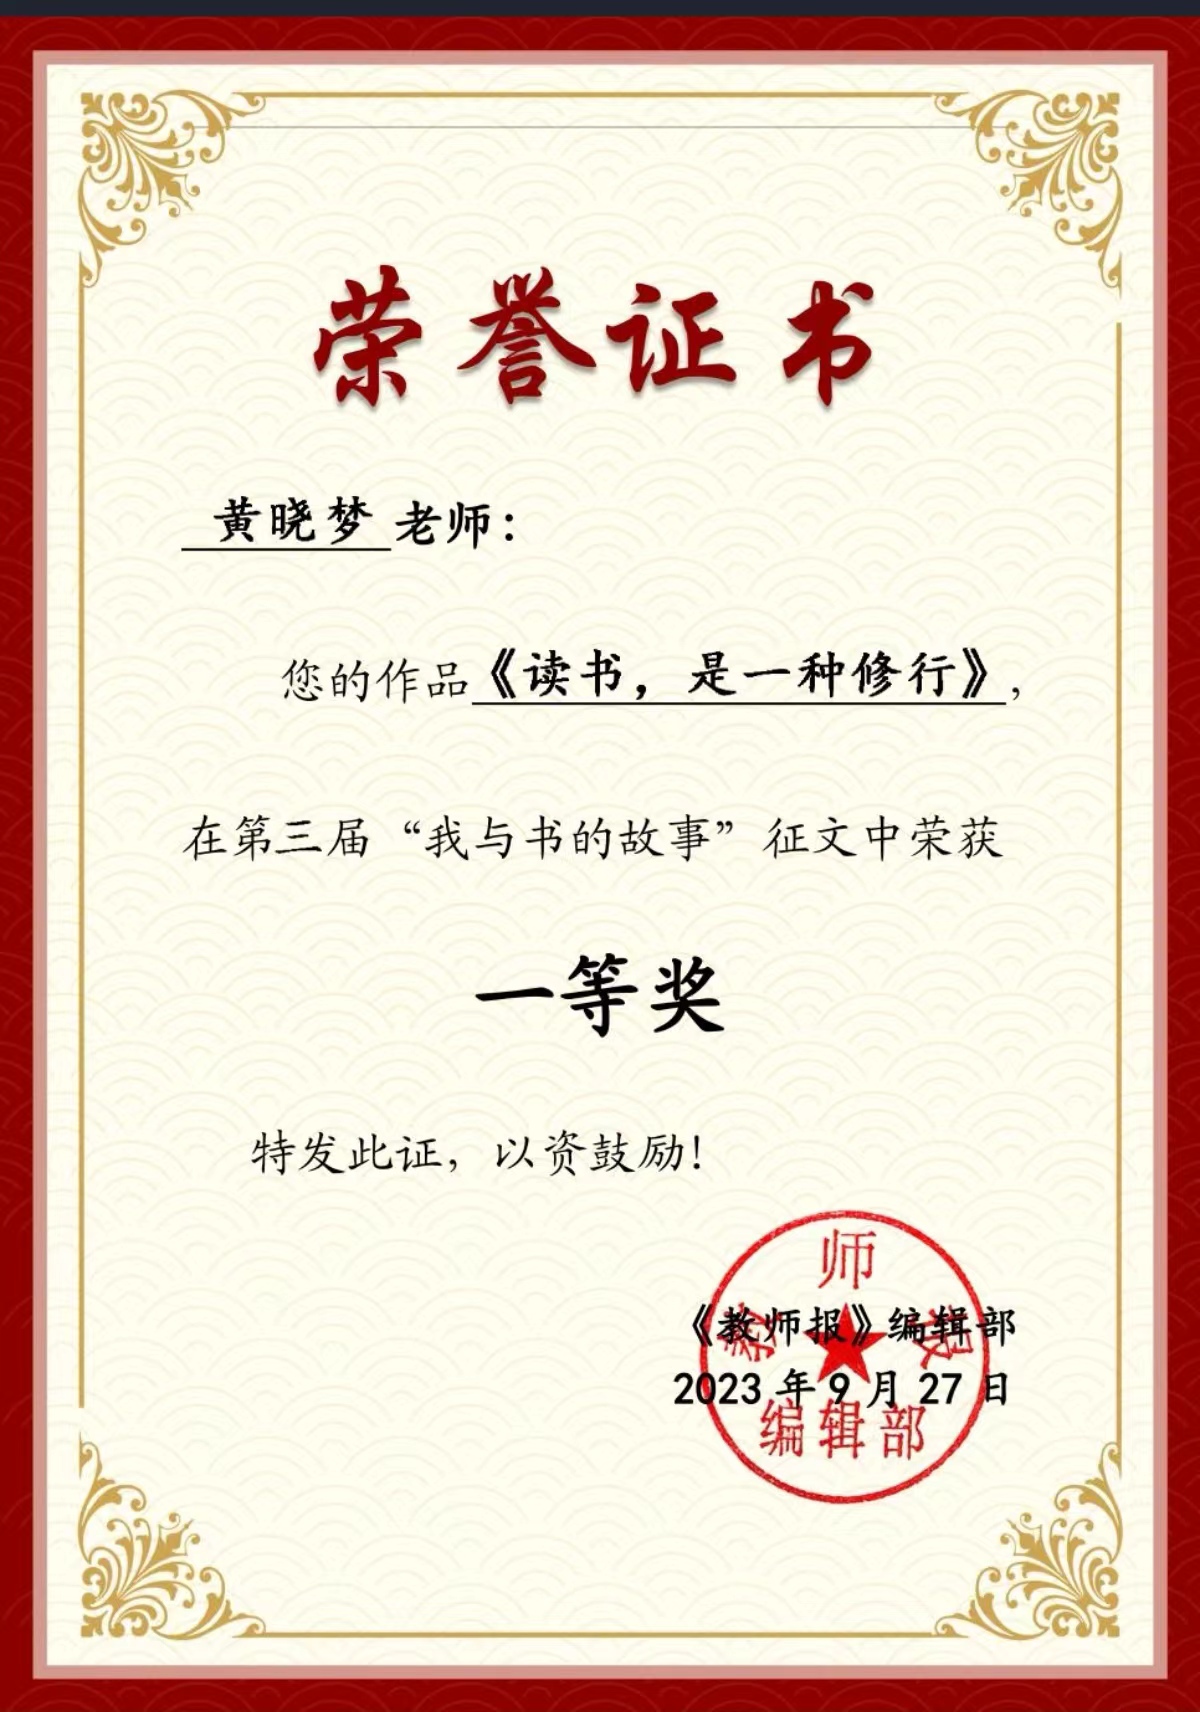 黄晓梦老师在“我与书的故事”全国征文大赛中荣获一等奖